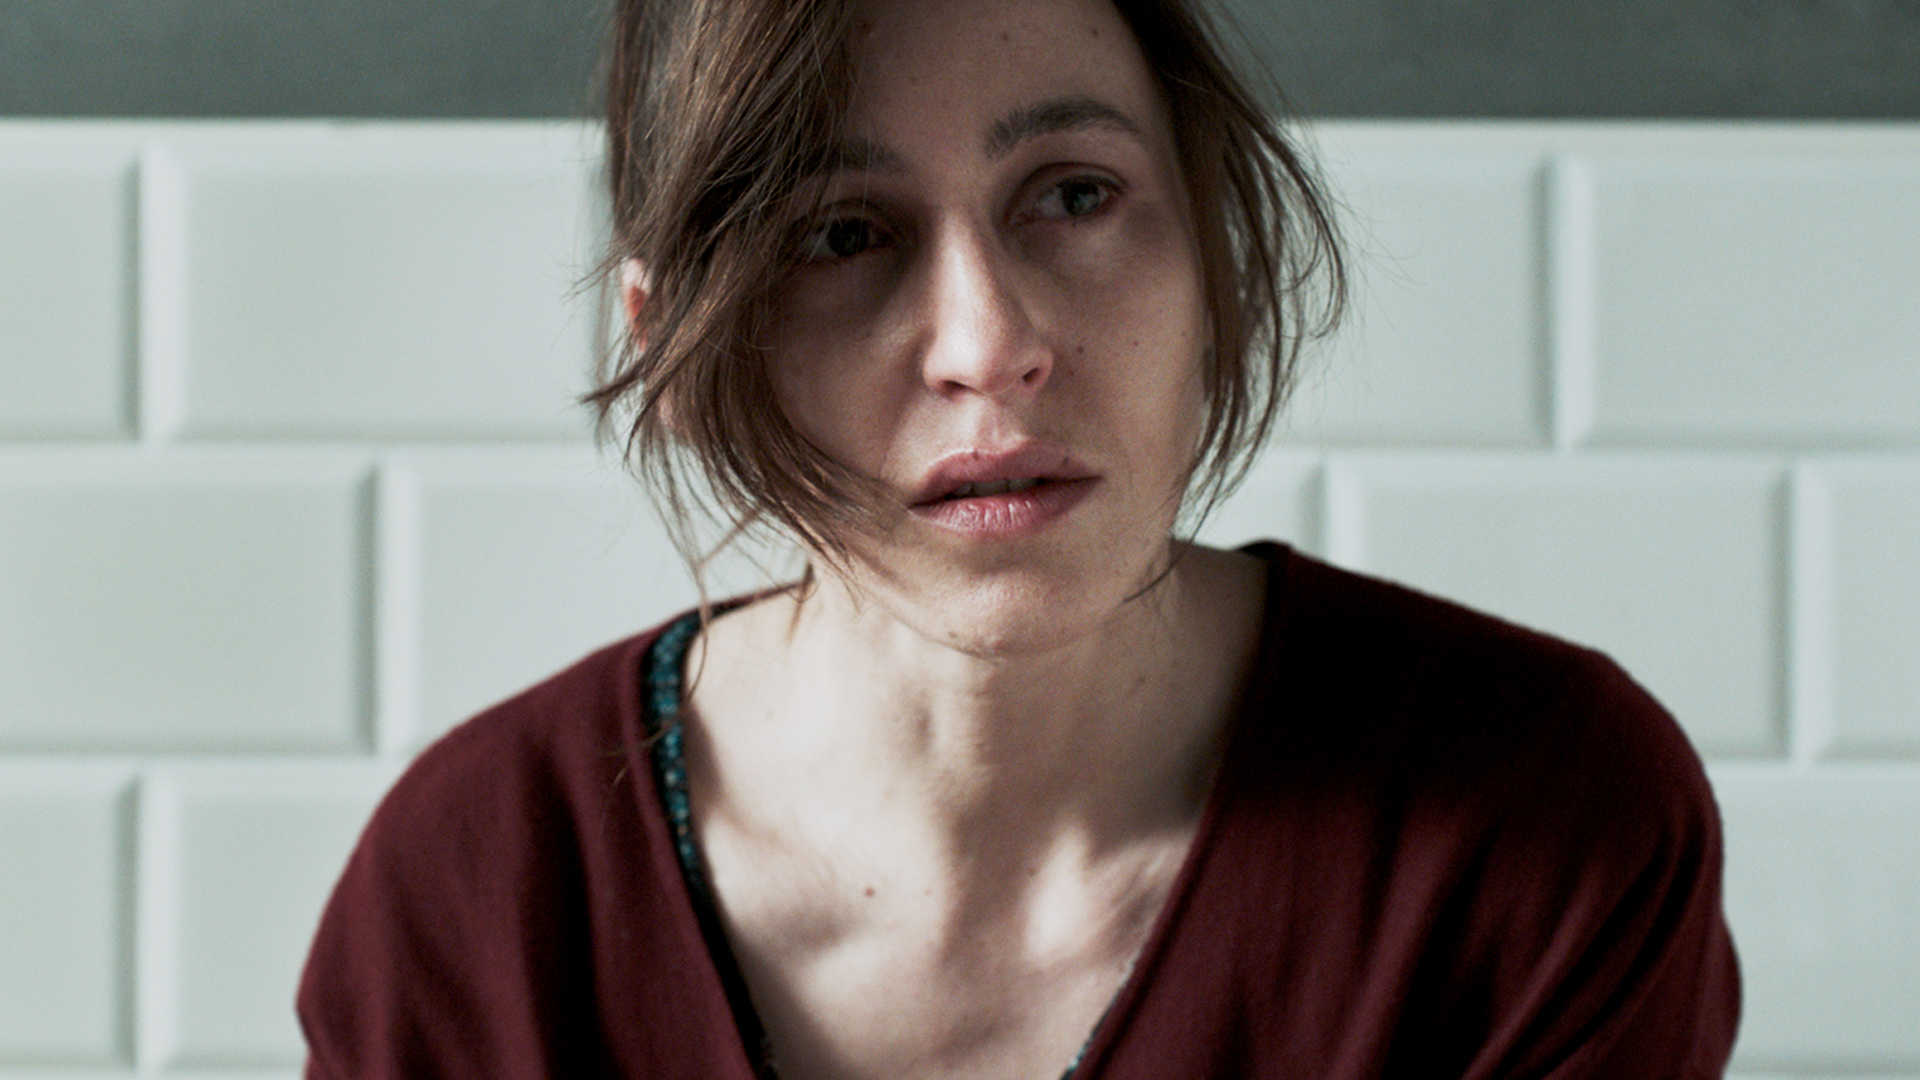 Die in Paris geborene Schauspielerin Sarah Adler, die Dafna in „Foxtrot“ spielt, ist einer der Stars des gegenwärtigen israelischen Kinos. Weitere sehenswerte Filme mit ihr sind „Jellyfish – Vom Meer getragen“ (2007) und „The Cakemaker“ (2017).